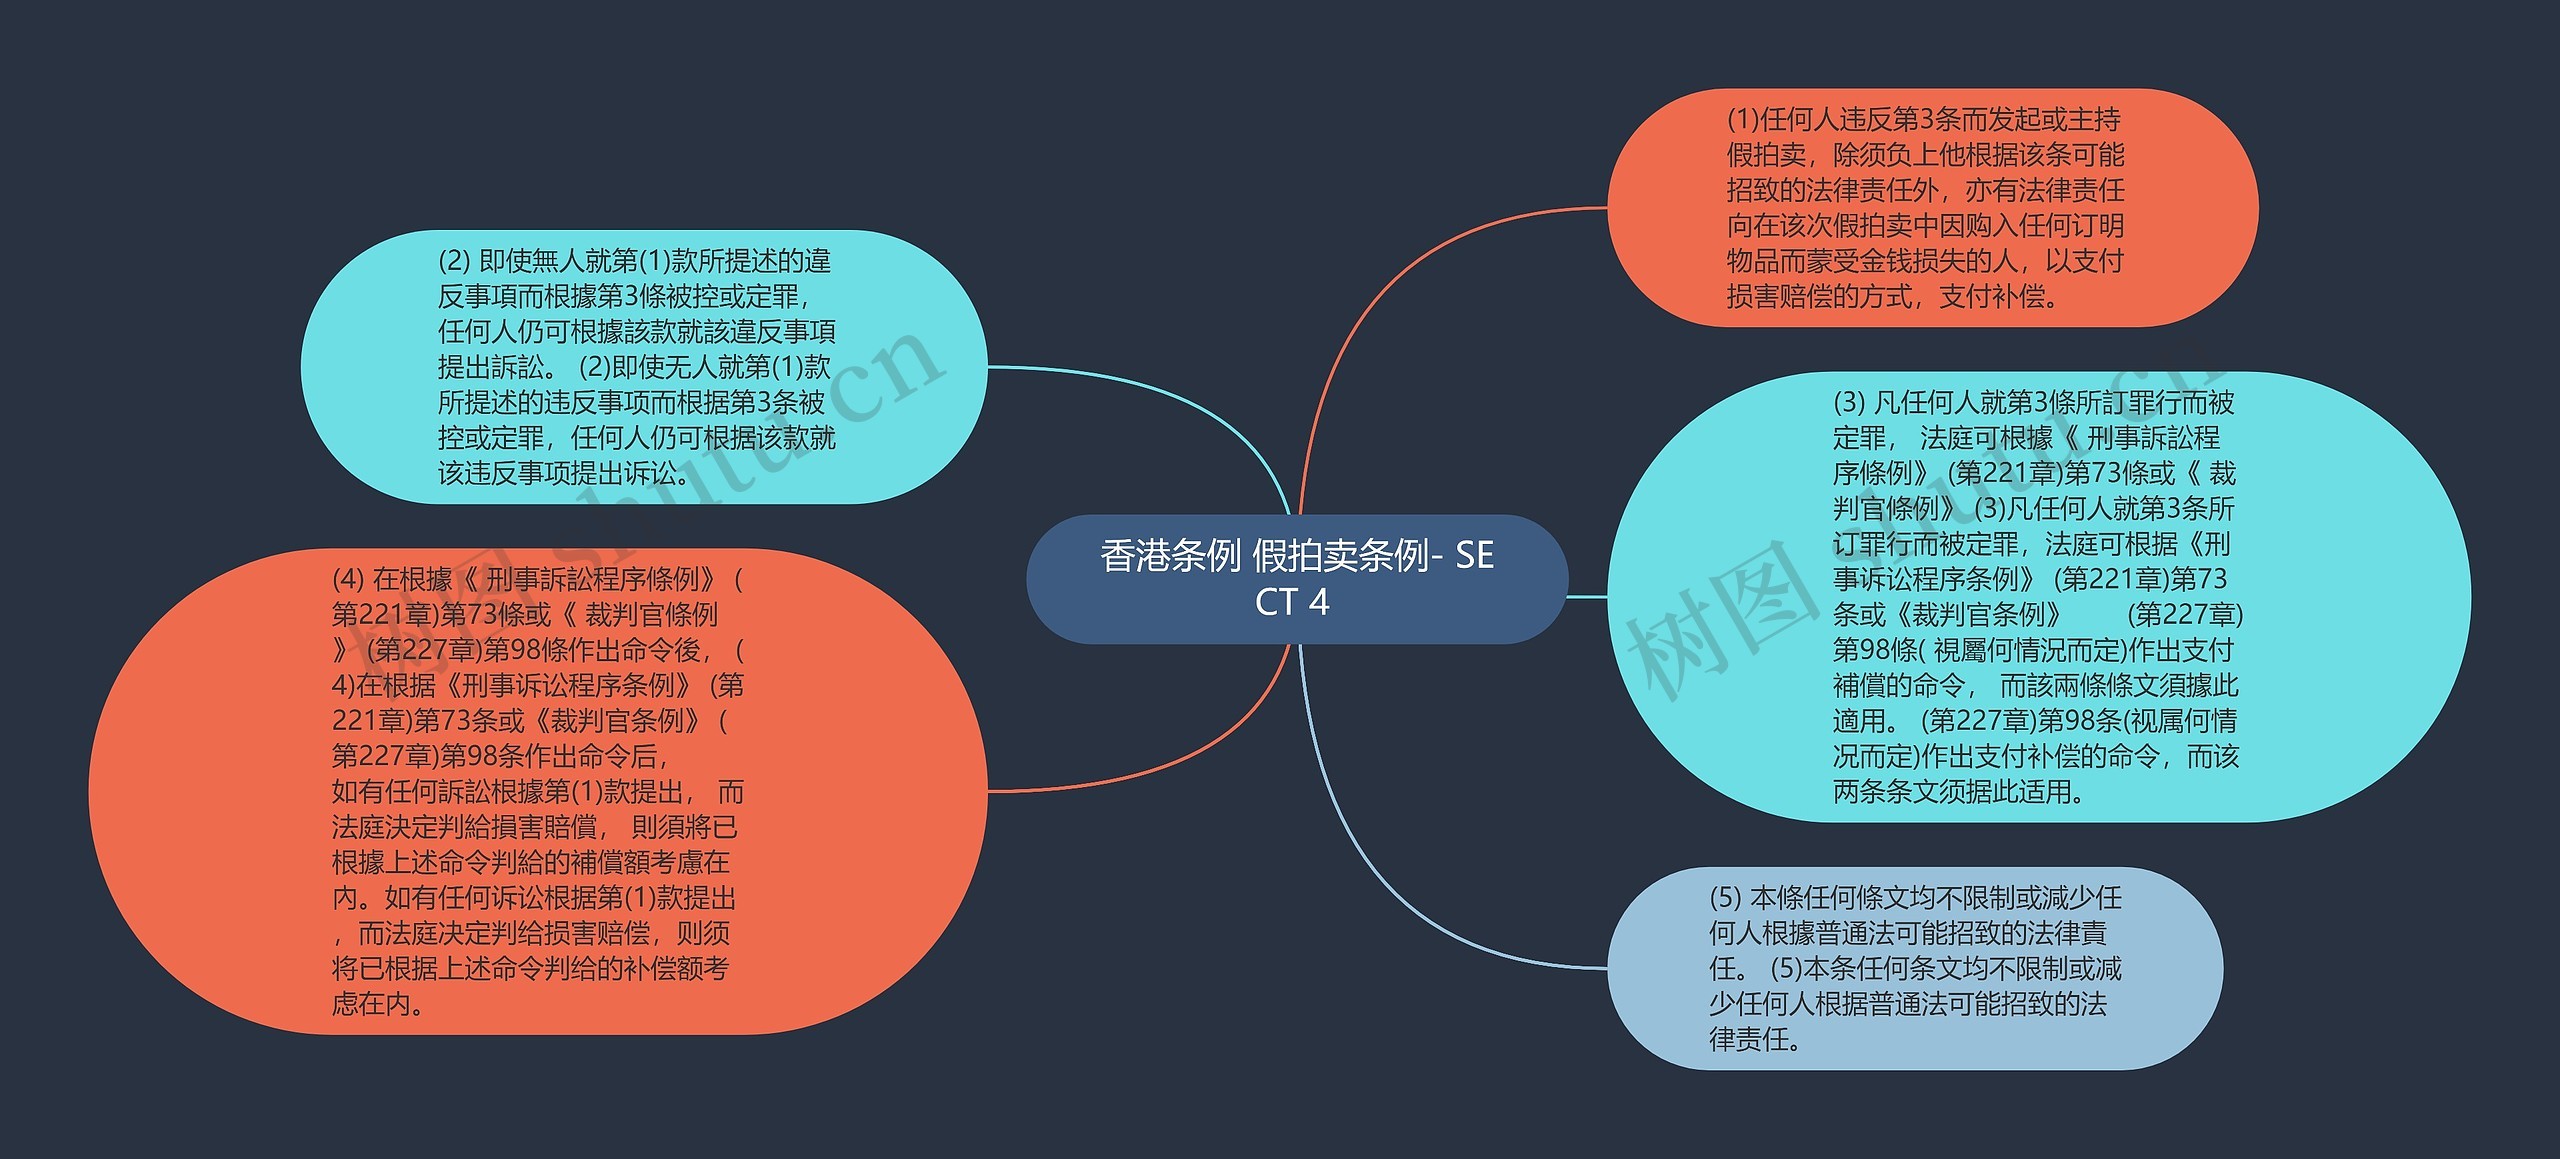 香港条例 假拍卖条例- SECT 4 思维导图